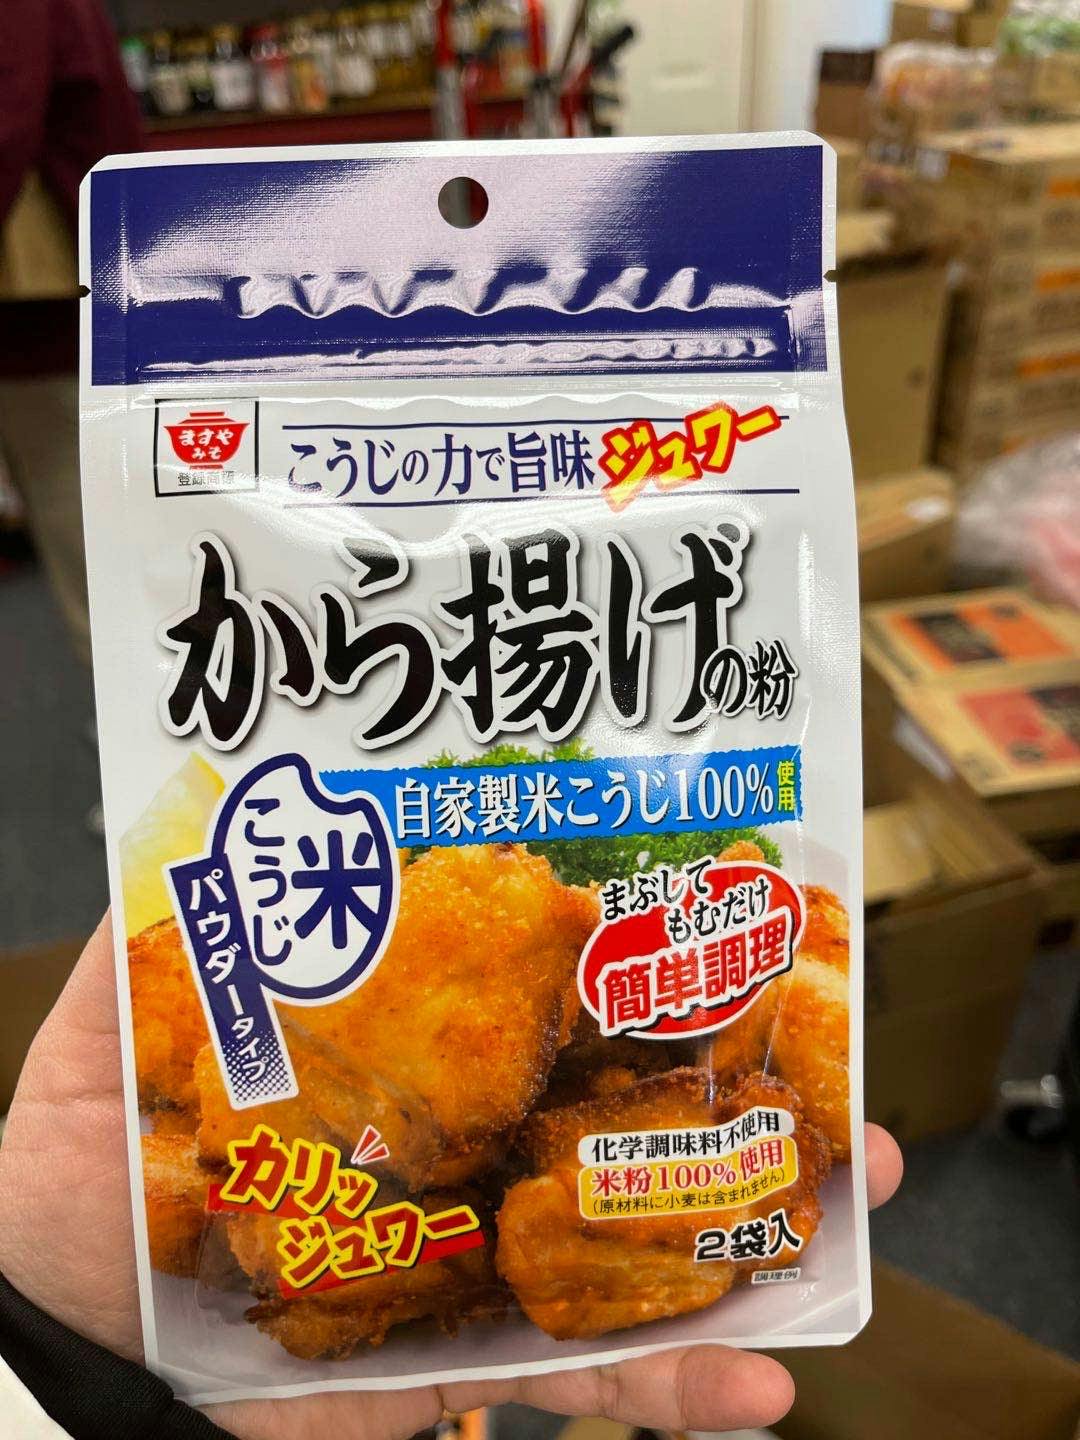 Fried Chicken Batter Mix 2pack